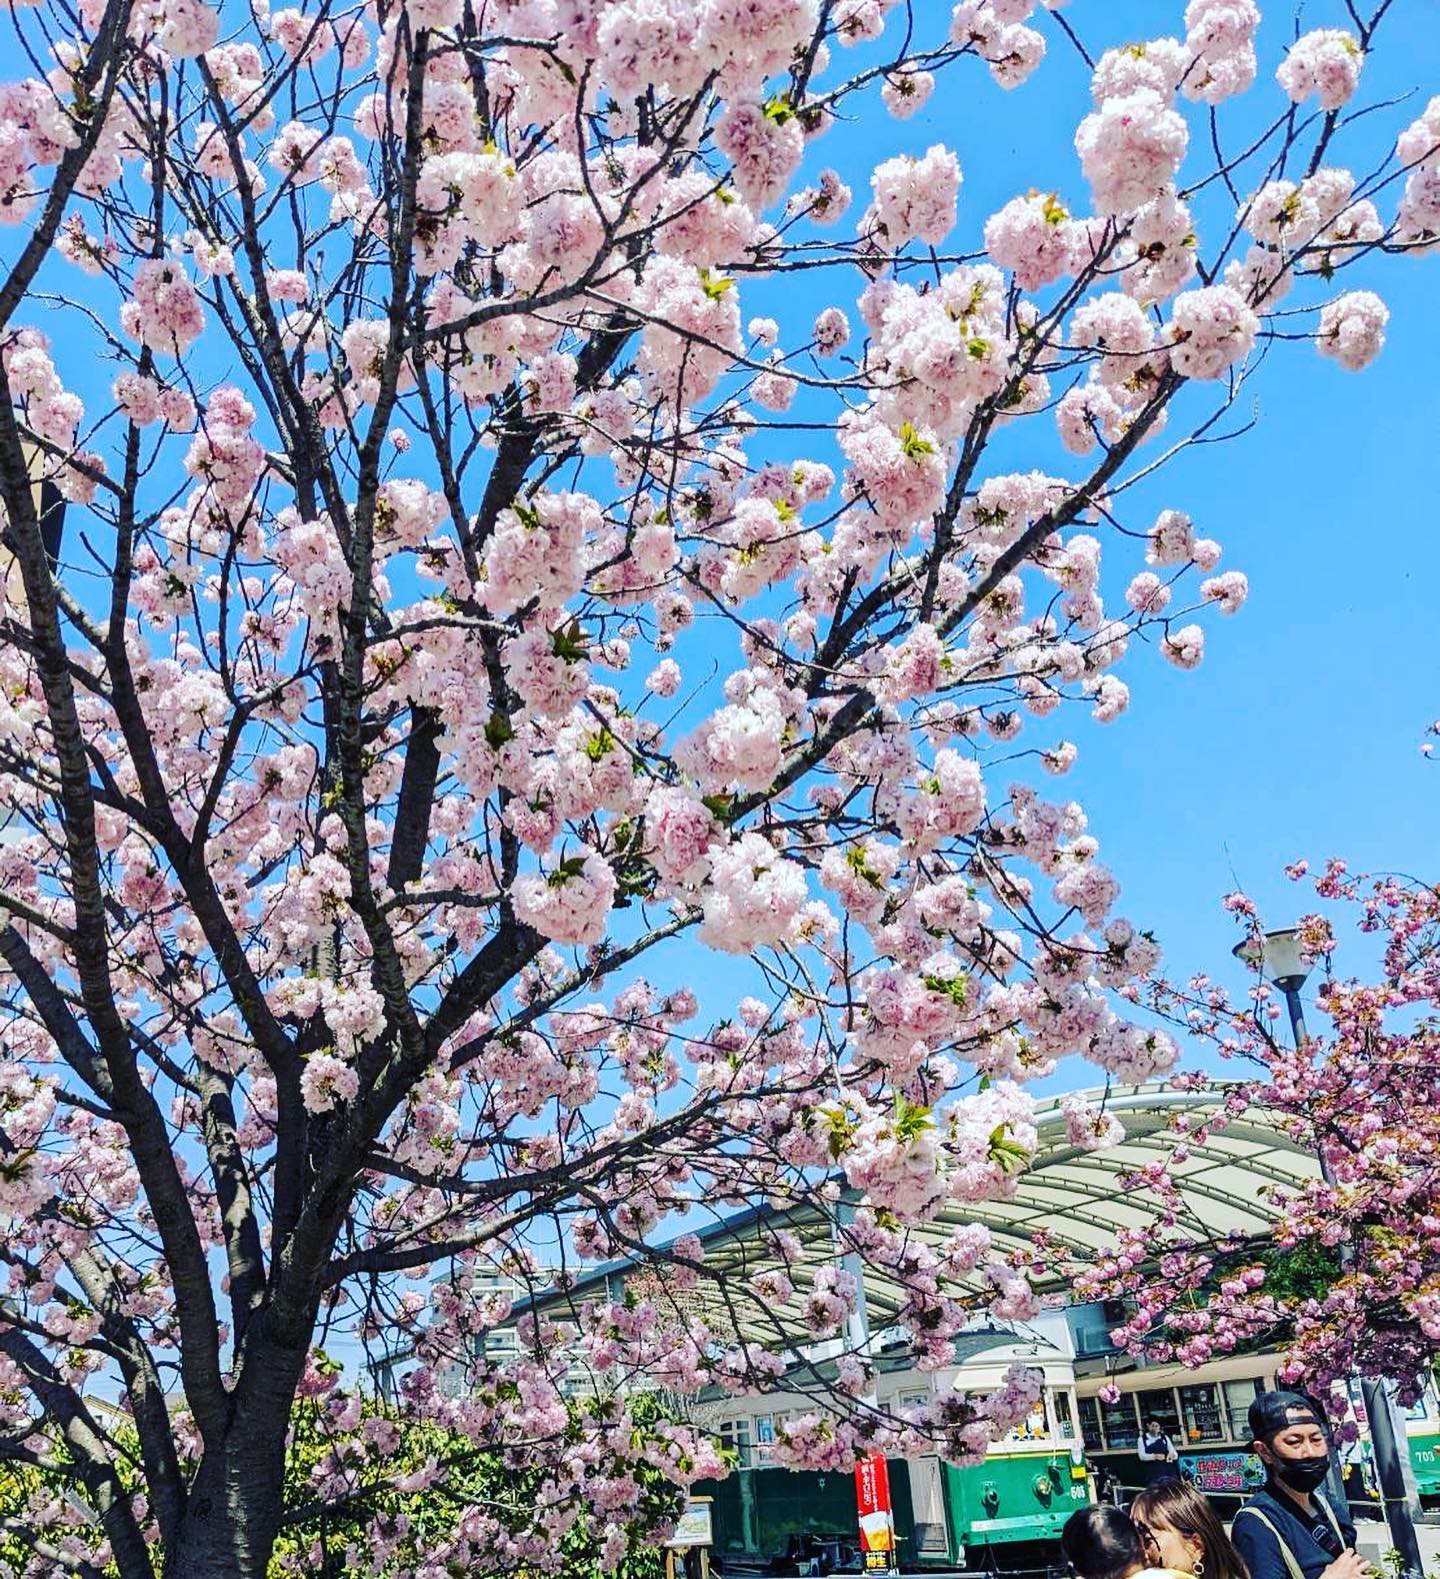 こんにちはマエダ文具店です！週末に梅小路公園でメイドインKYOTOというイベントがありました！土曜日は雨風でコンディションが良くなかったのですが、日曜日は晴れてよかったですね！キッチンカーも出ていて賑わってました！桜もそろそろ終盤ですが、まだキレイに咲いてる桜もありました！これから暖かくなってきますので、週末は梅小路公園にお出かけしてみてください！楽しいイベントも満載です！#マエダ文具店 #前田文具店#梅小路公園 #梅小路京都西駅 #京都水族館 #京都鉄道博物館#七条センター商店街 #ホテルエミオン京都 #梅小路ポテル京都 #ザロイヤルパークホテル京都梅小路 #桜 #イベント #メイドイン京都 #madeinkyoto